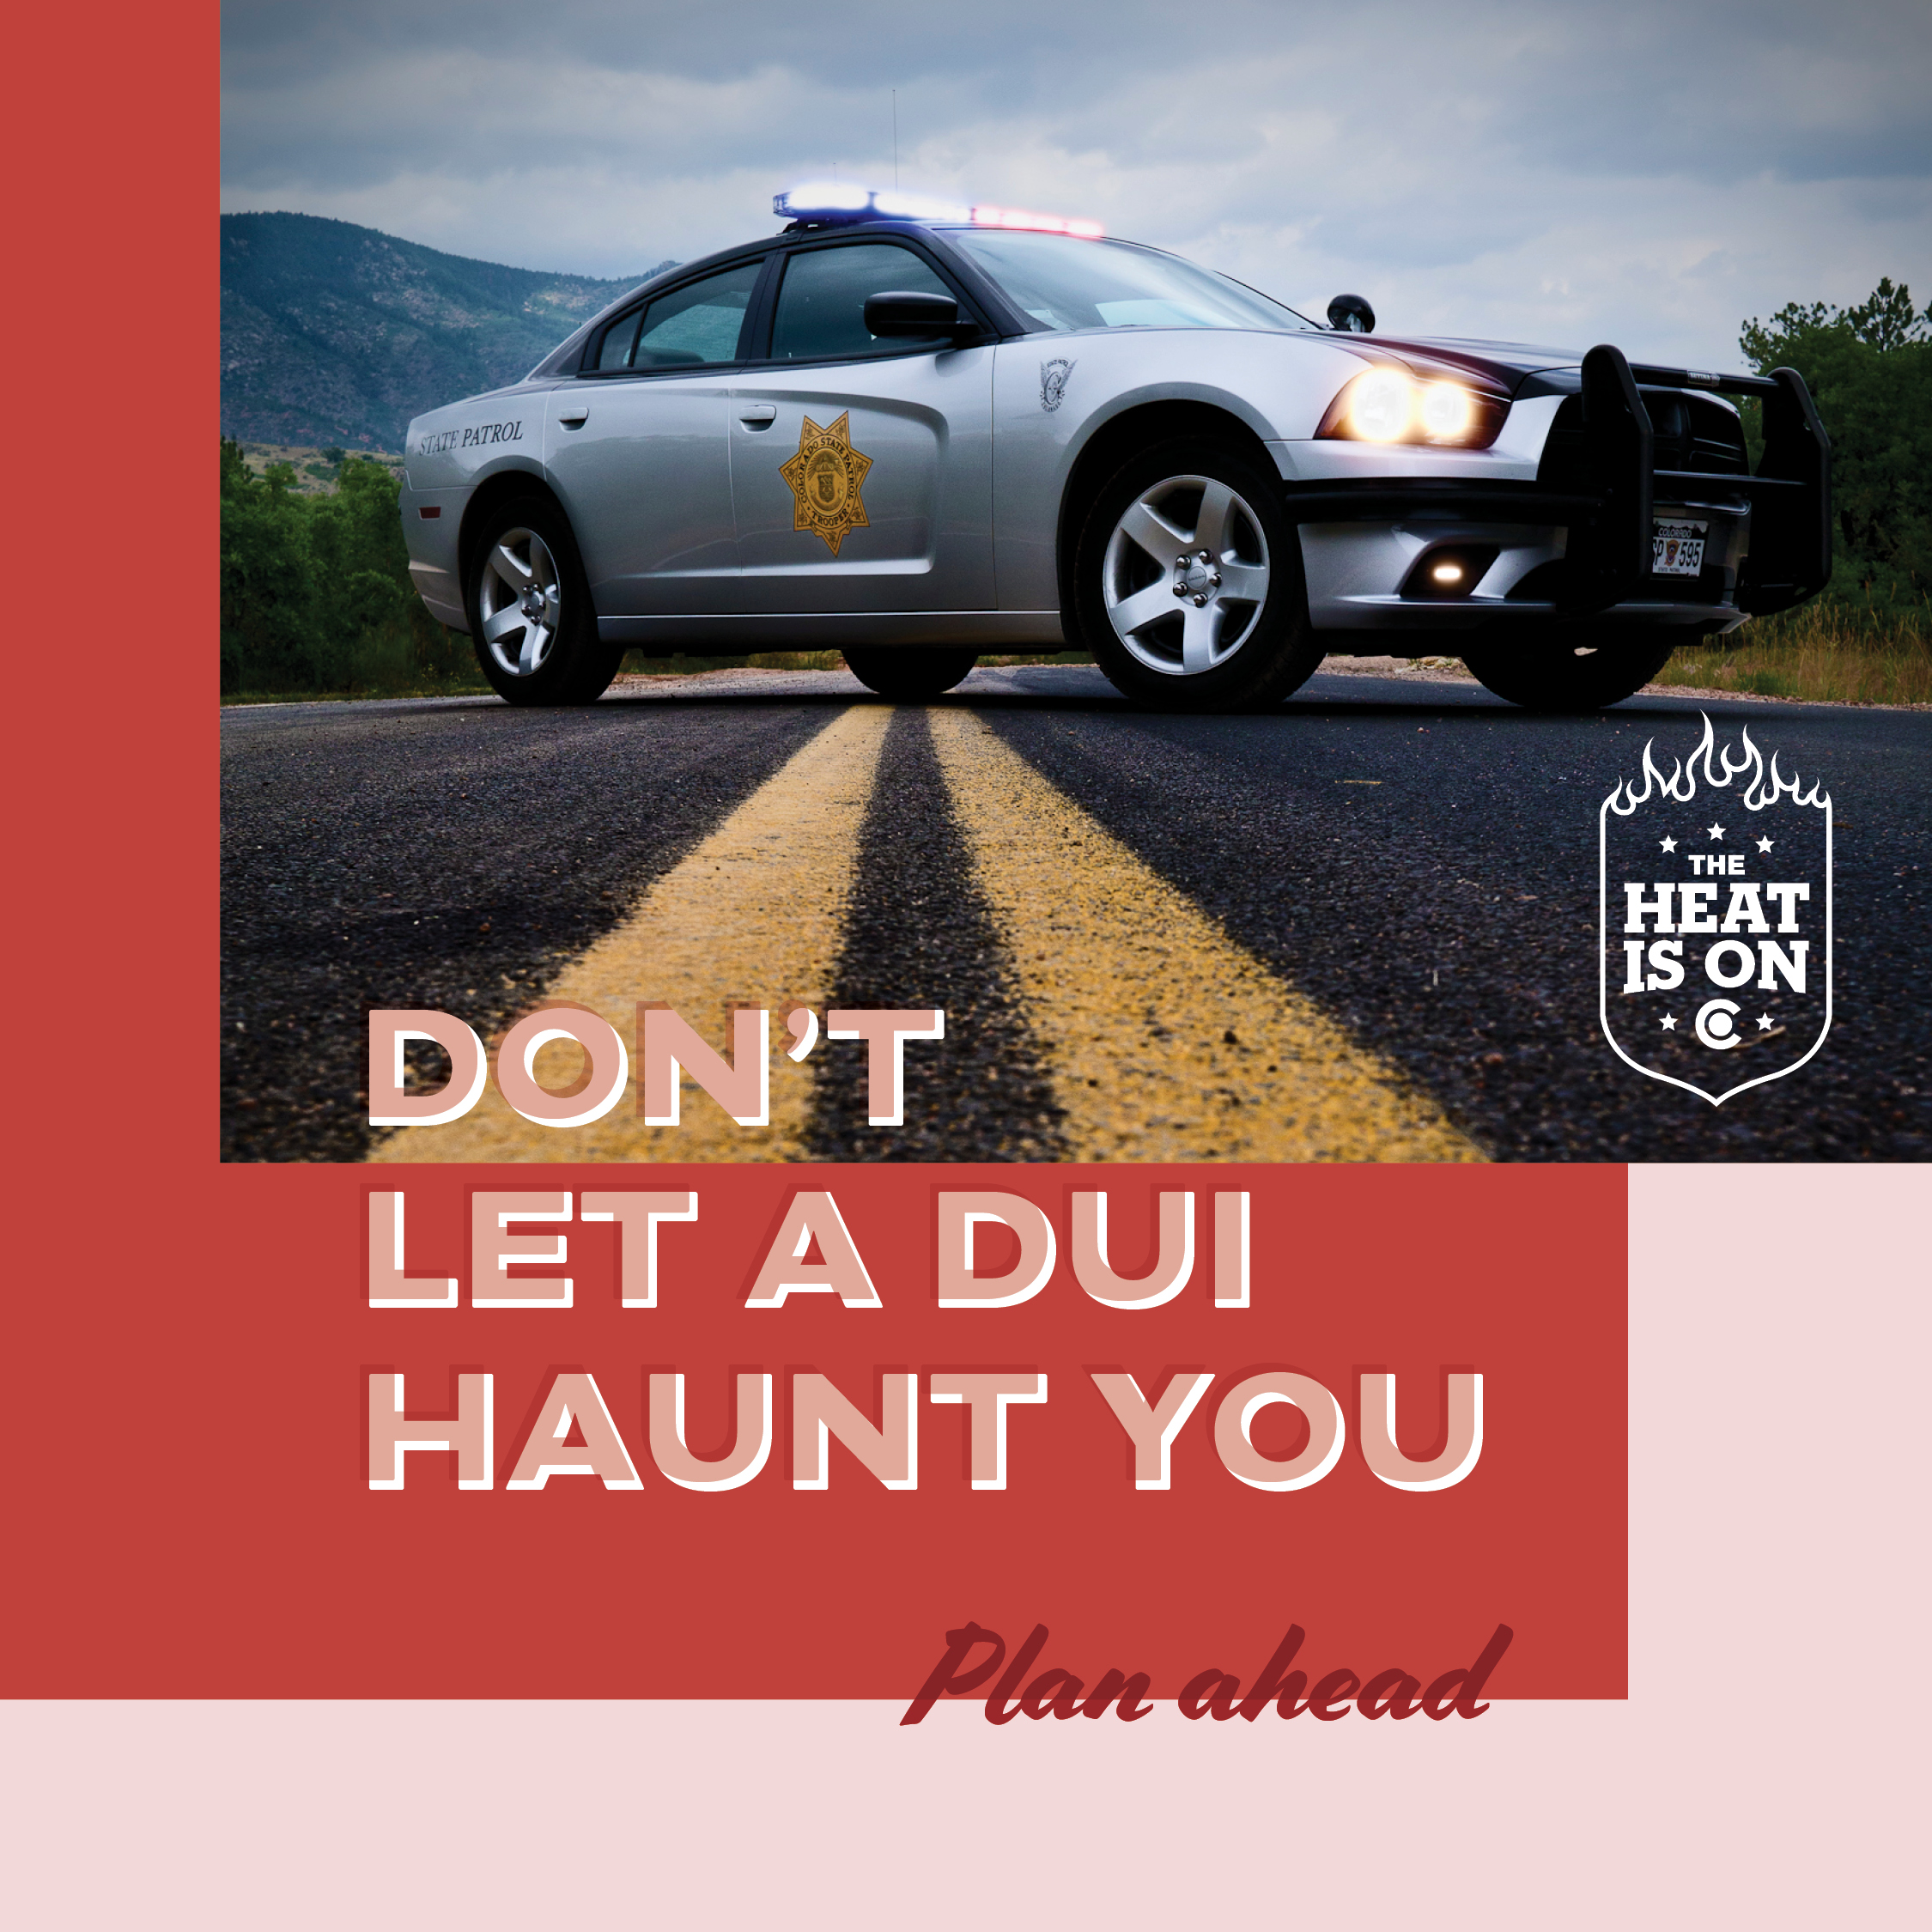 Don't Let A DUI Haunt You detail image